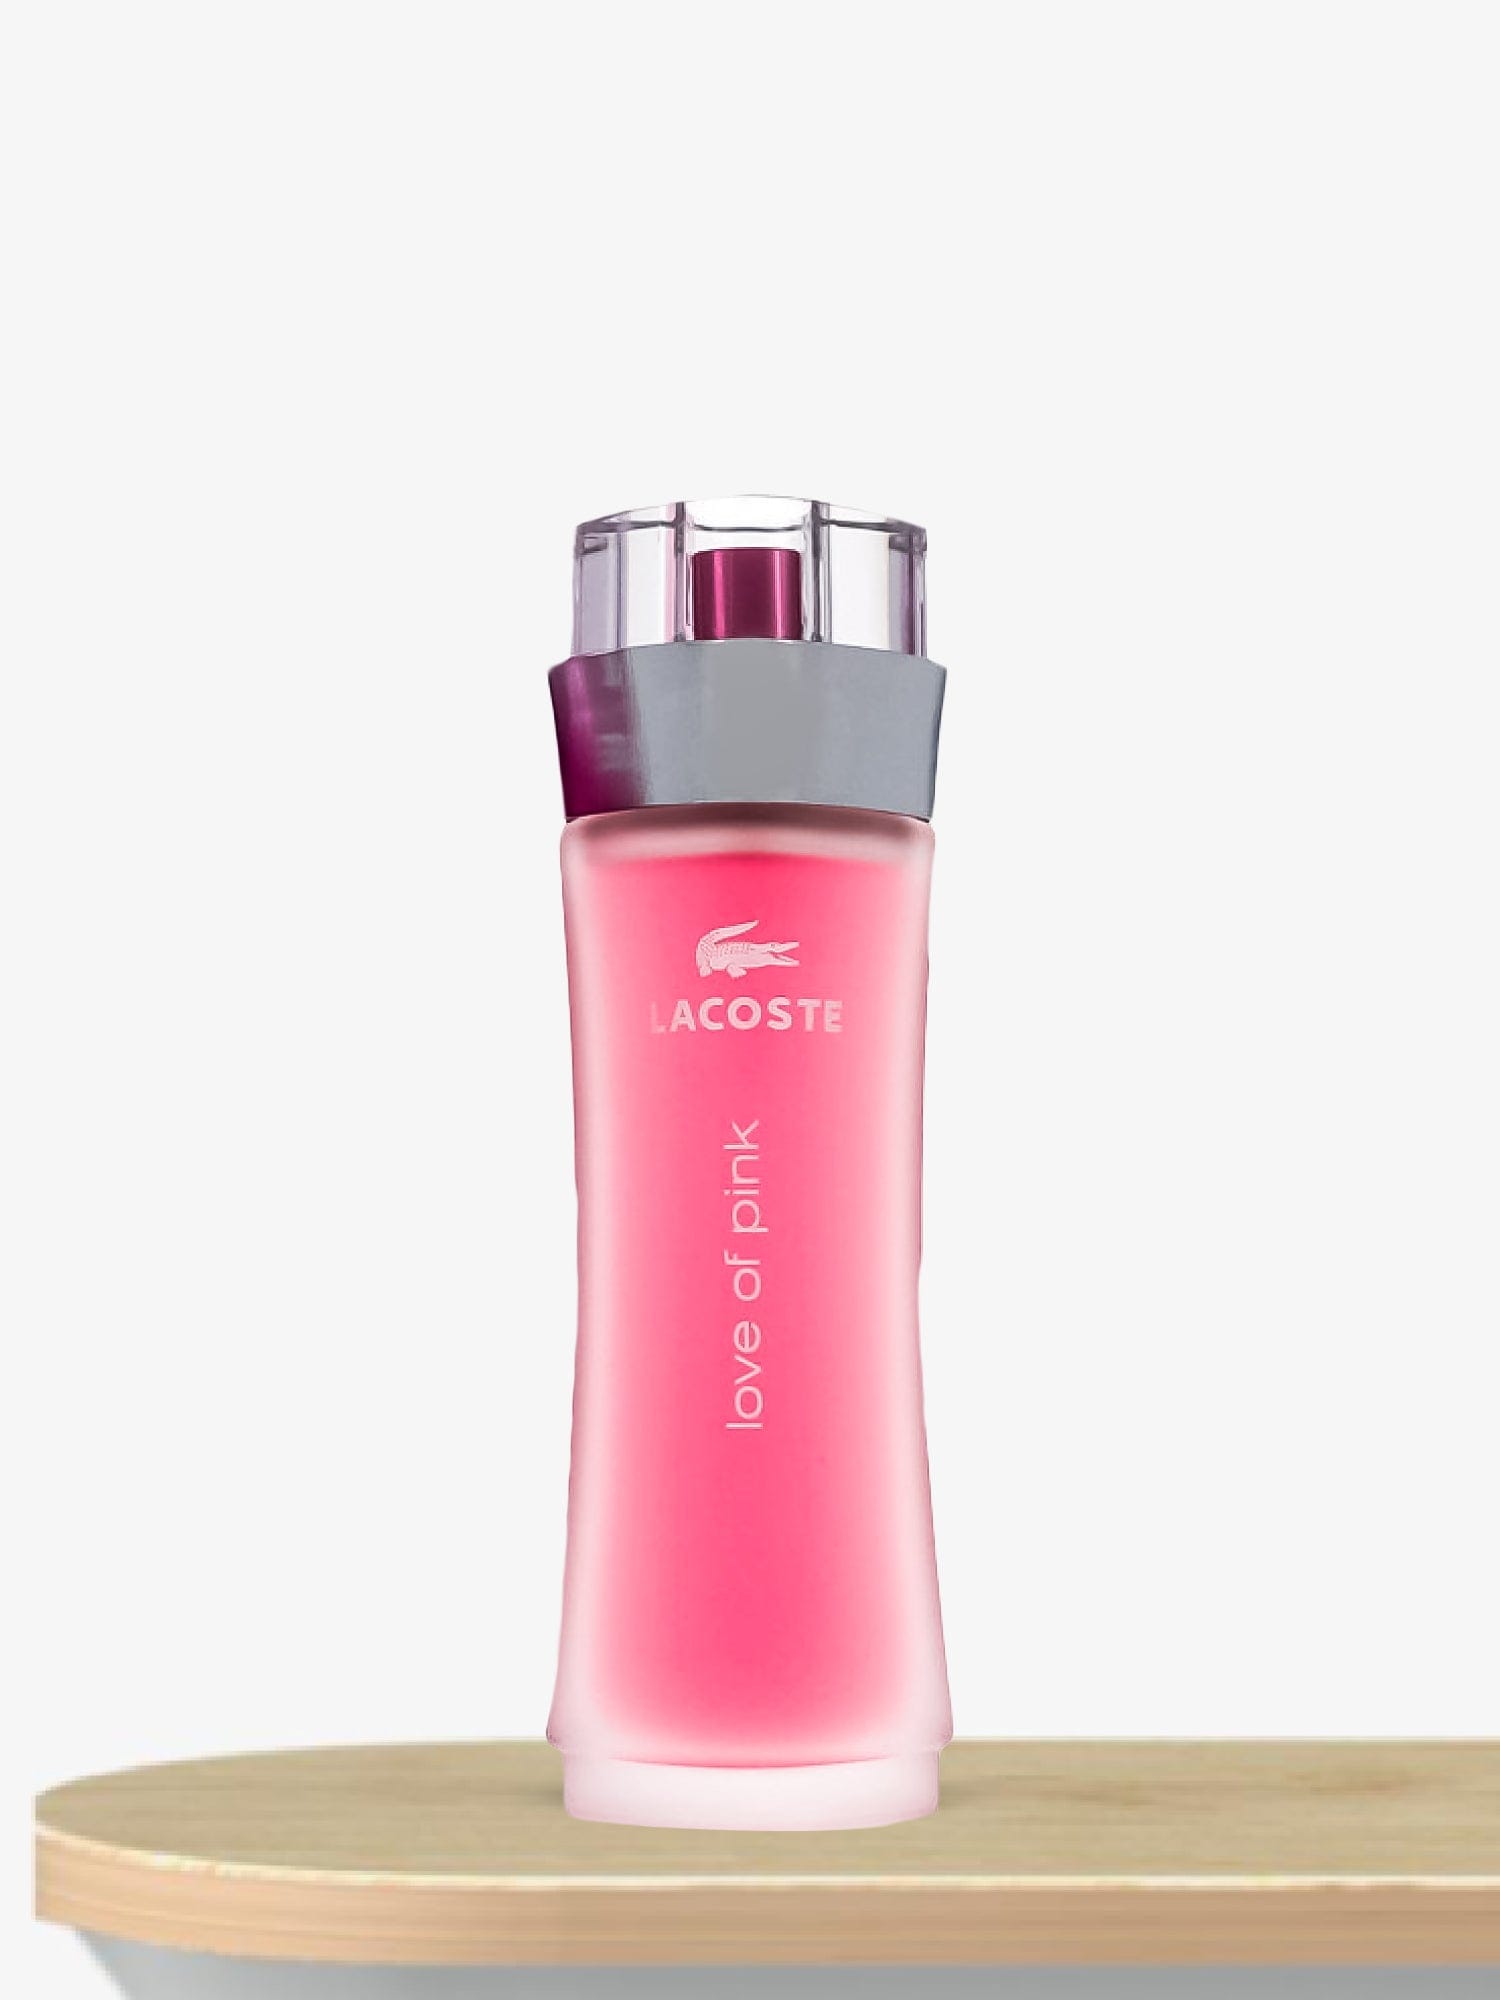 Lacoste Love Of Pink Eau de Toilette 90 mL / Female